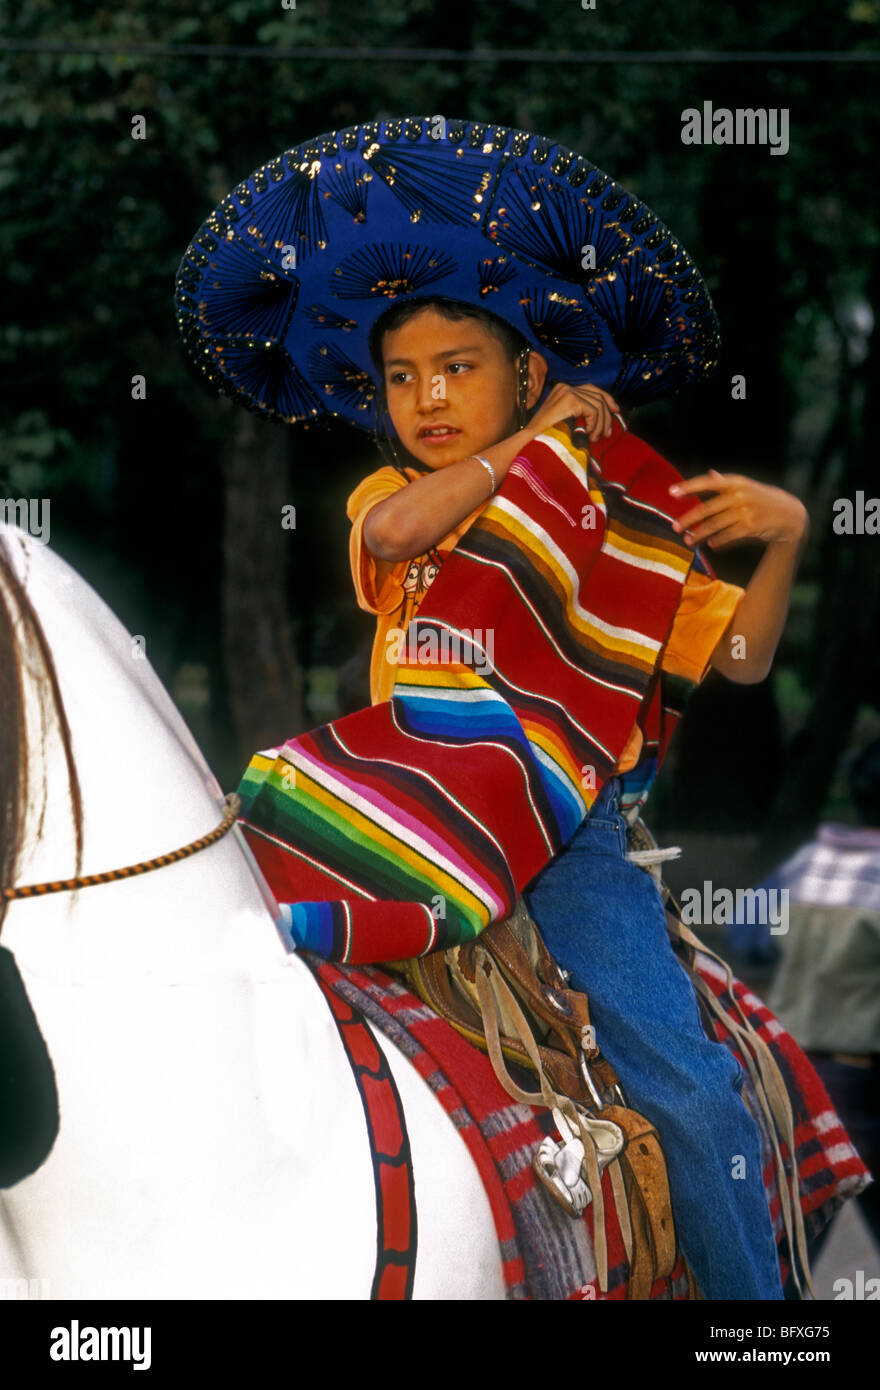 1, un Mexicain, garçon, garçon, jeune garçon, petit garçon, homme, enfant, enfant, assis en selle sur cheval jouet, parc de Chapultepec, Mexico, Mexique Banque D'Images